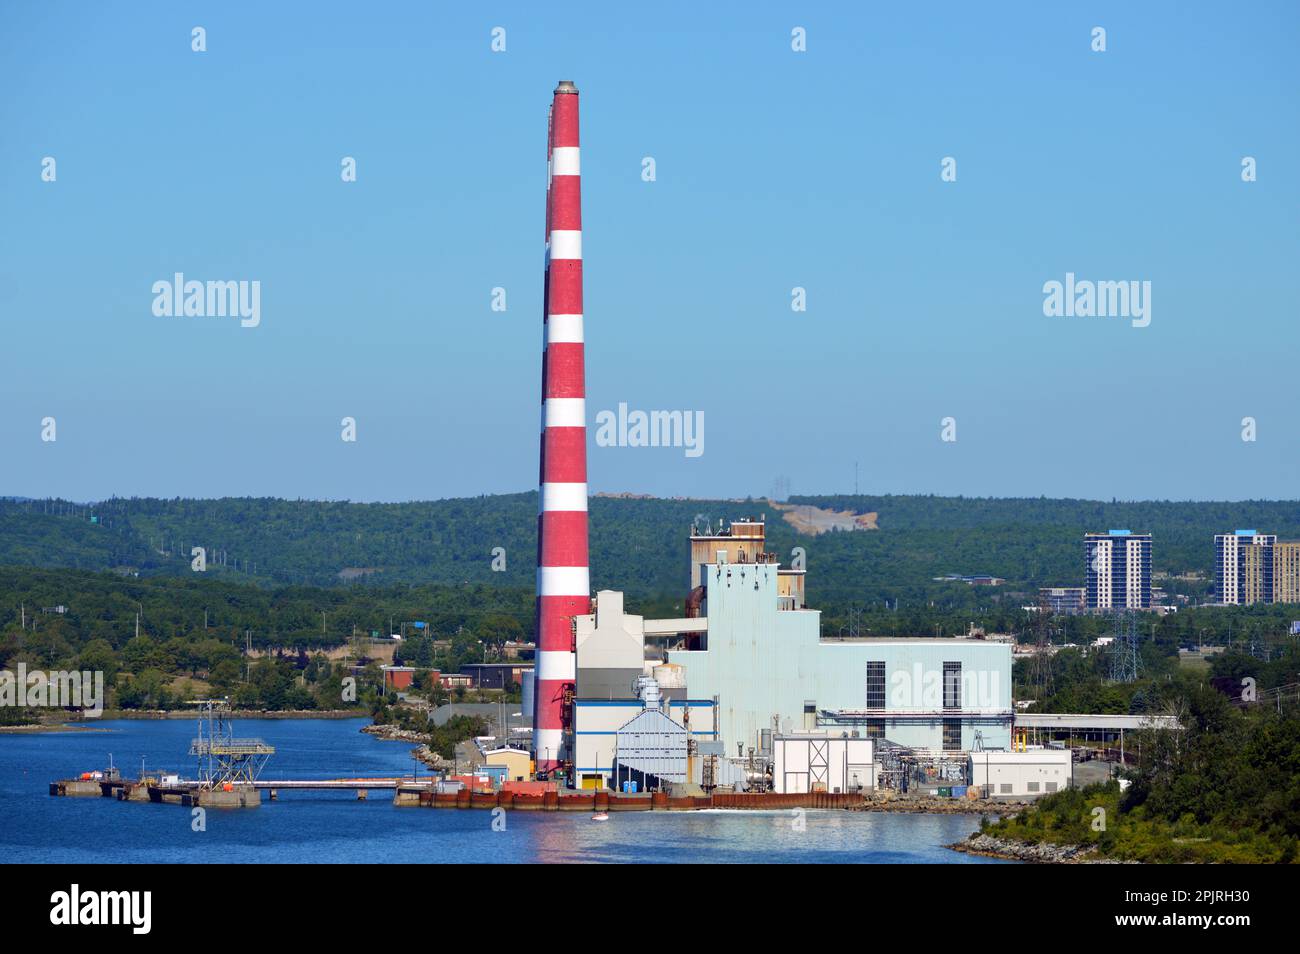 Tufts Cove Generating Station, une centrale électrique exploitée par Nova Scotia Power Inc., sur la rive du port de Halifax, à Dartmouth, au Canada Banque D'Images